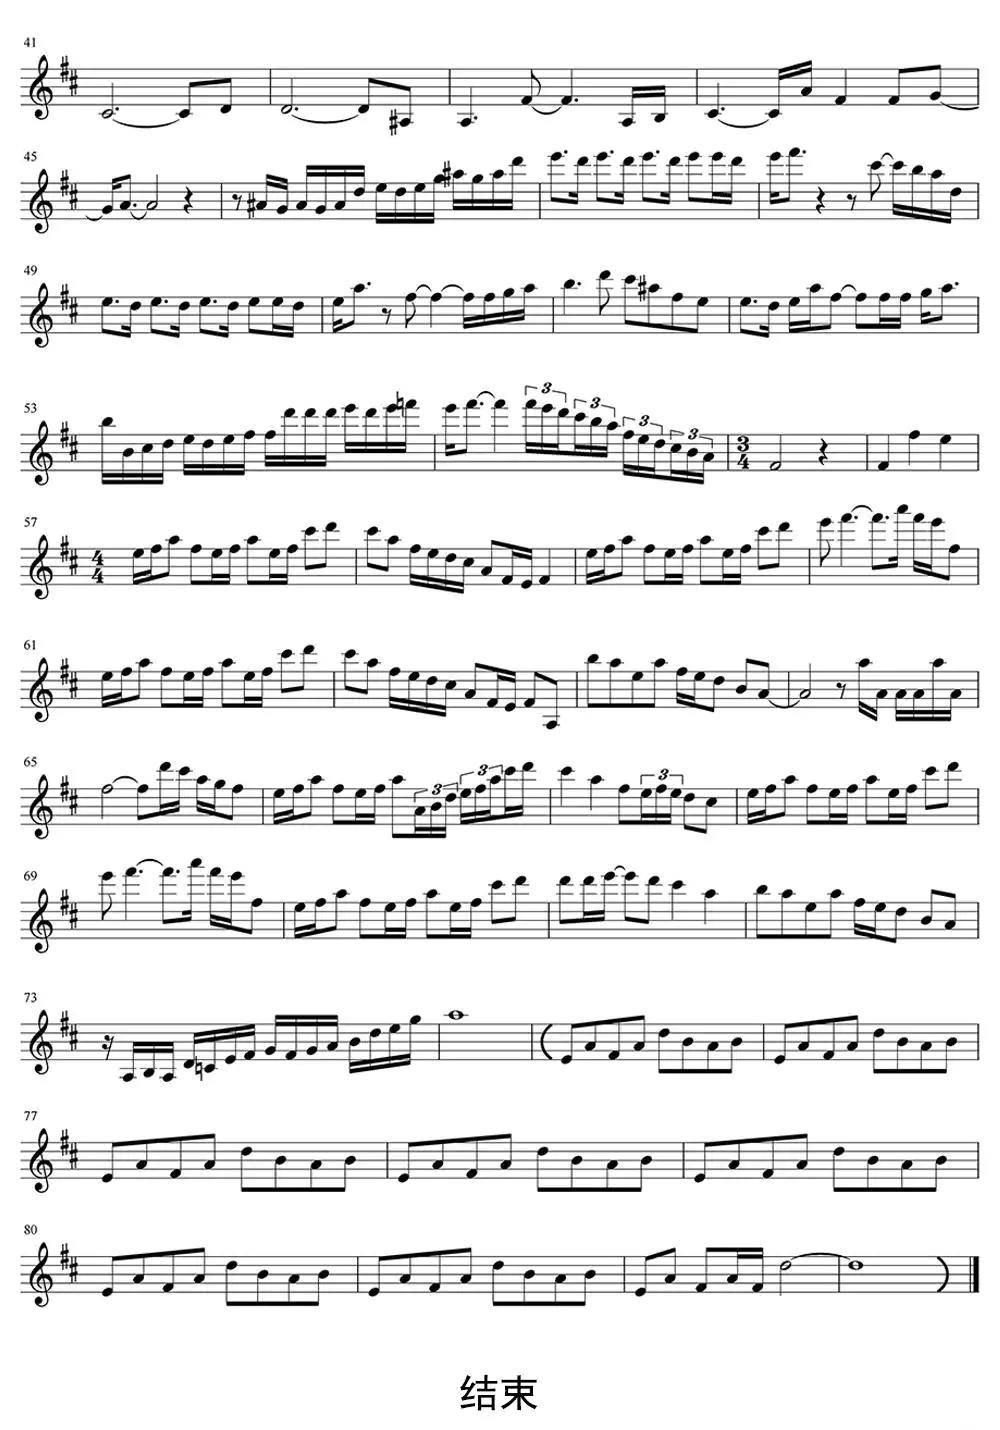 风之歌小提琴演奏乐谱图片